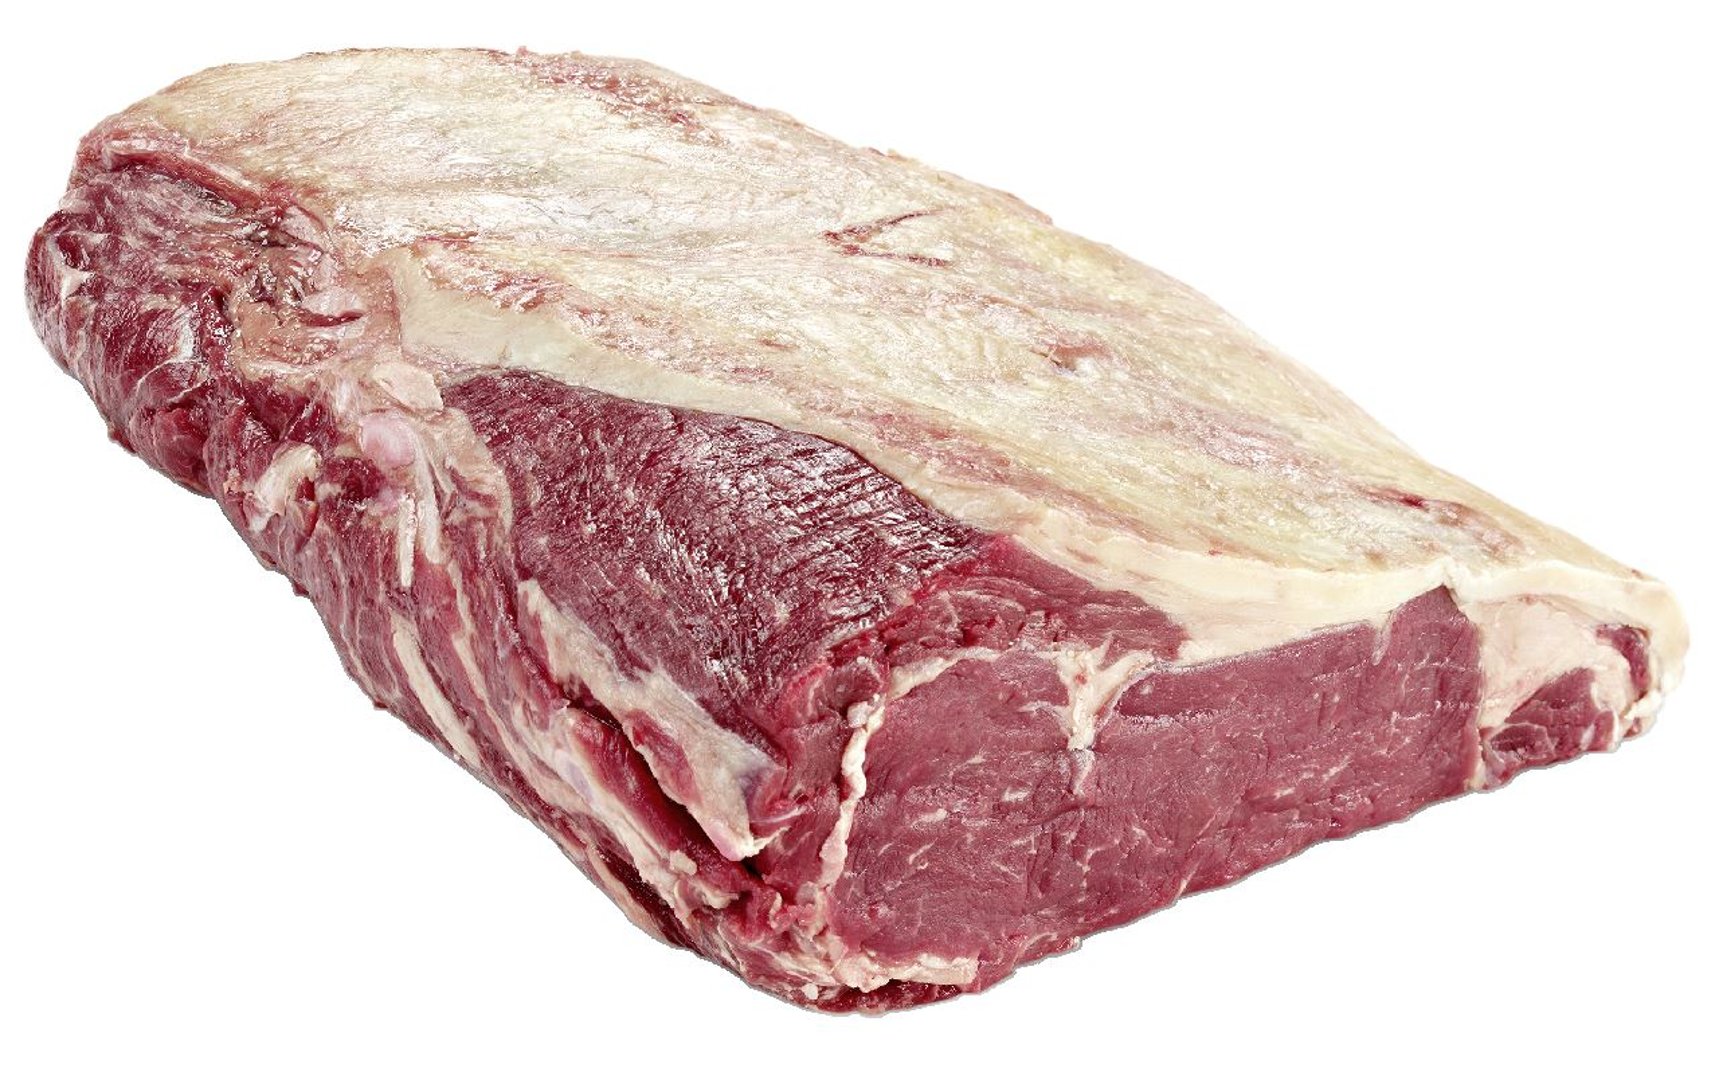 True Wilderness - Dry Aged Rinder Roastbeef ohne Knochen ca. 2,5 kg Stücke